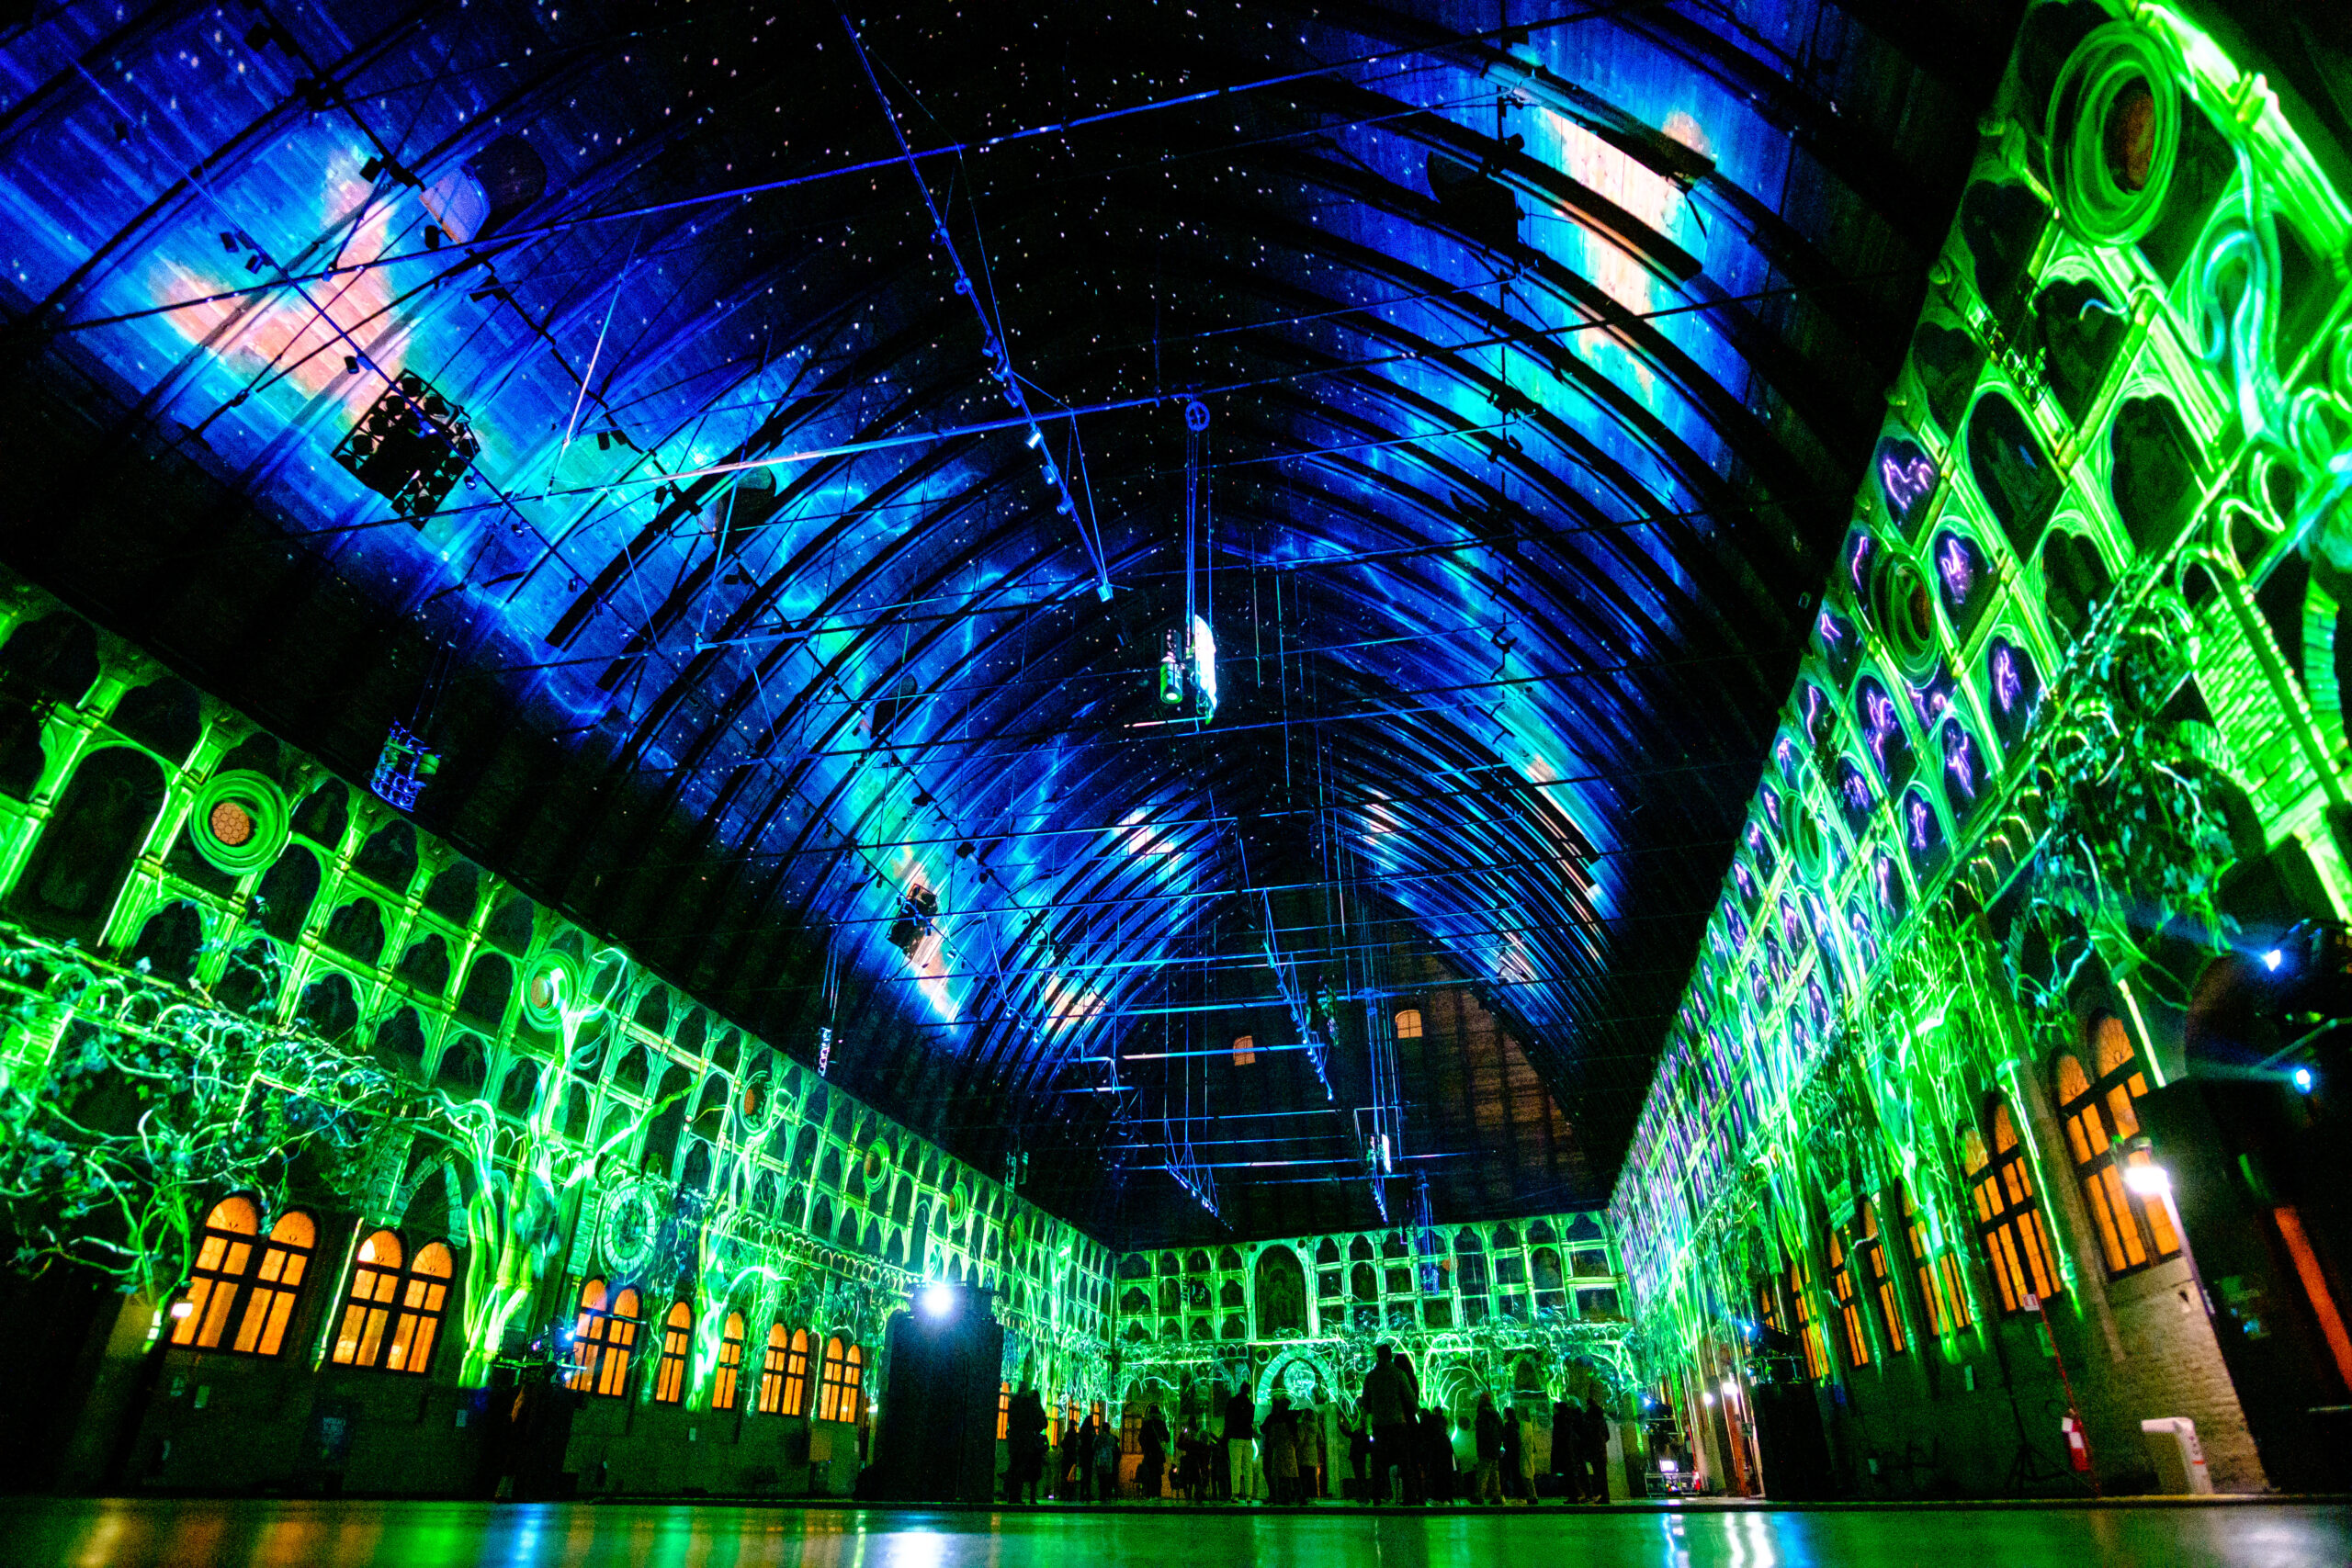 Il salone del palazzo della ragione illuminato di verde e blublu Sidera Aurea blu con le proiezioni del video mapping Sidera Aurea